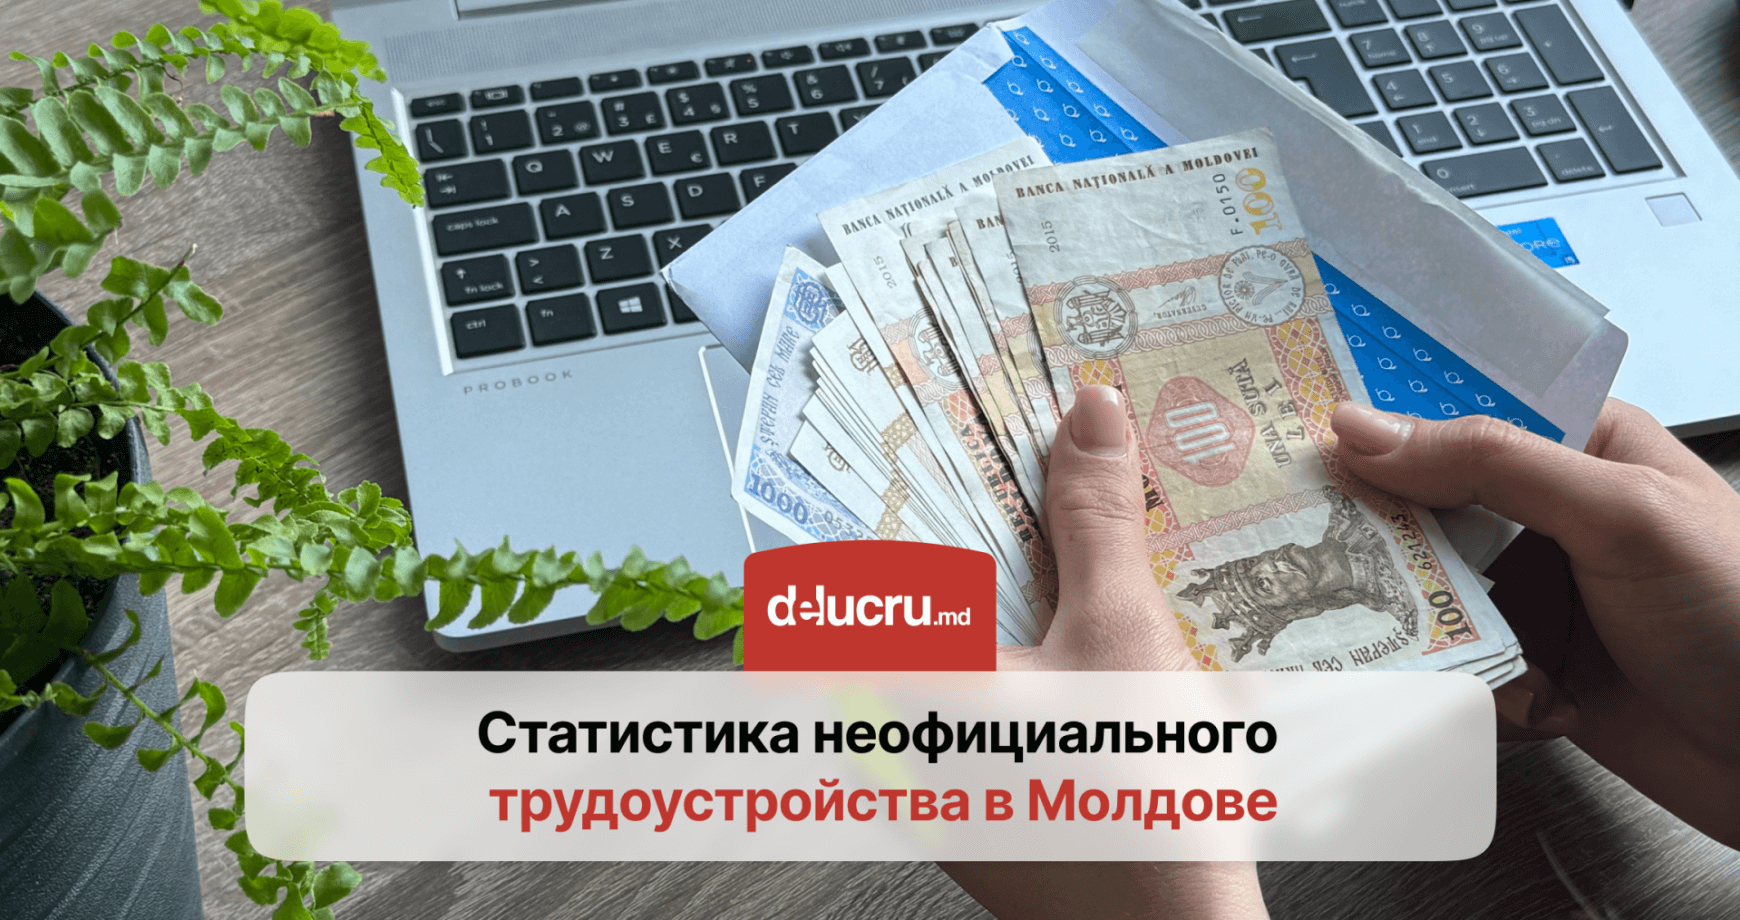 Статистика и анализ: сколько работников в Молдове получают зарплату в конвертах?